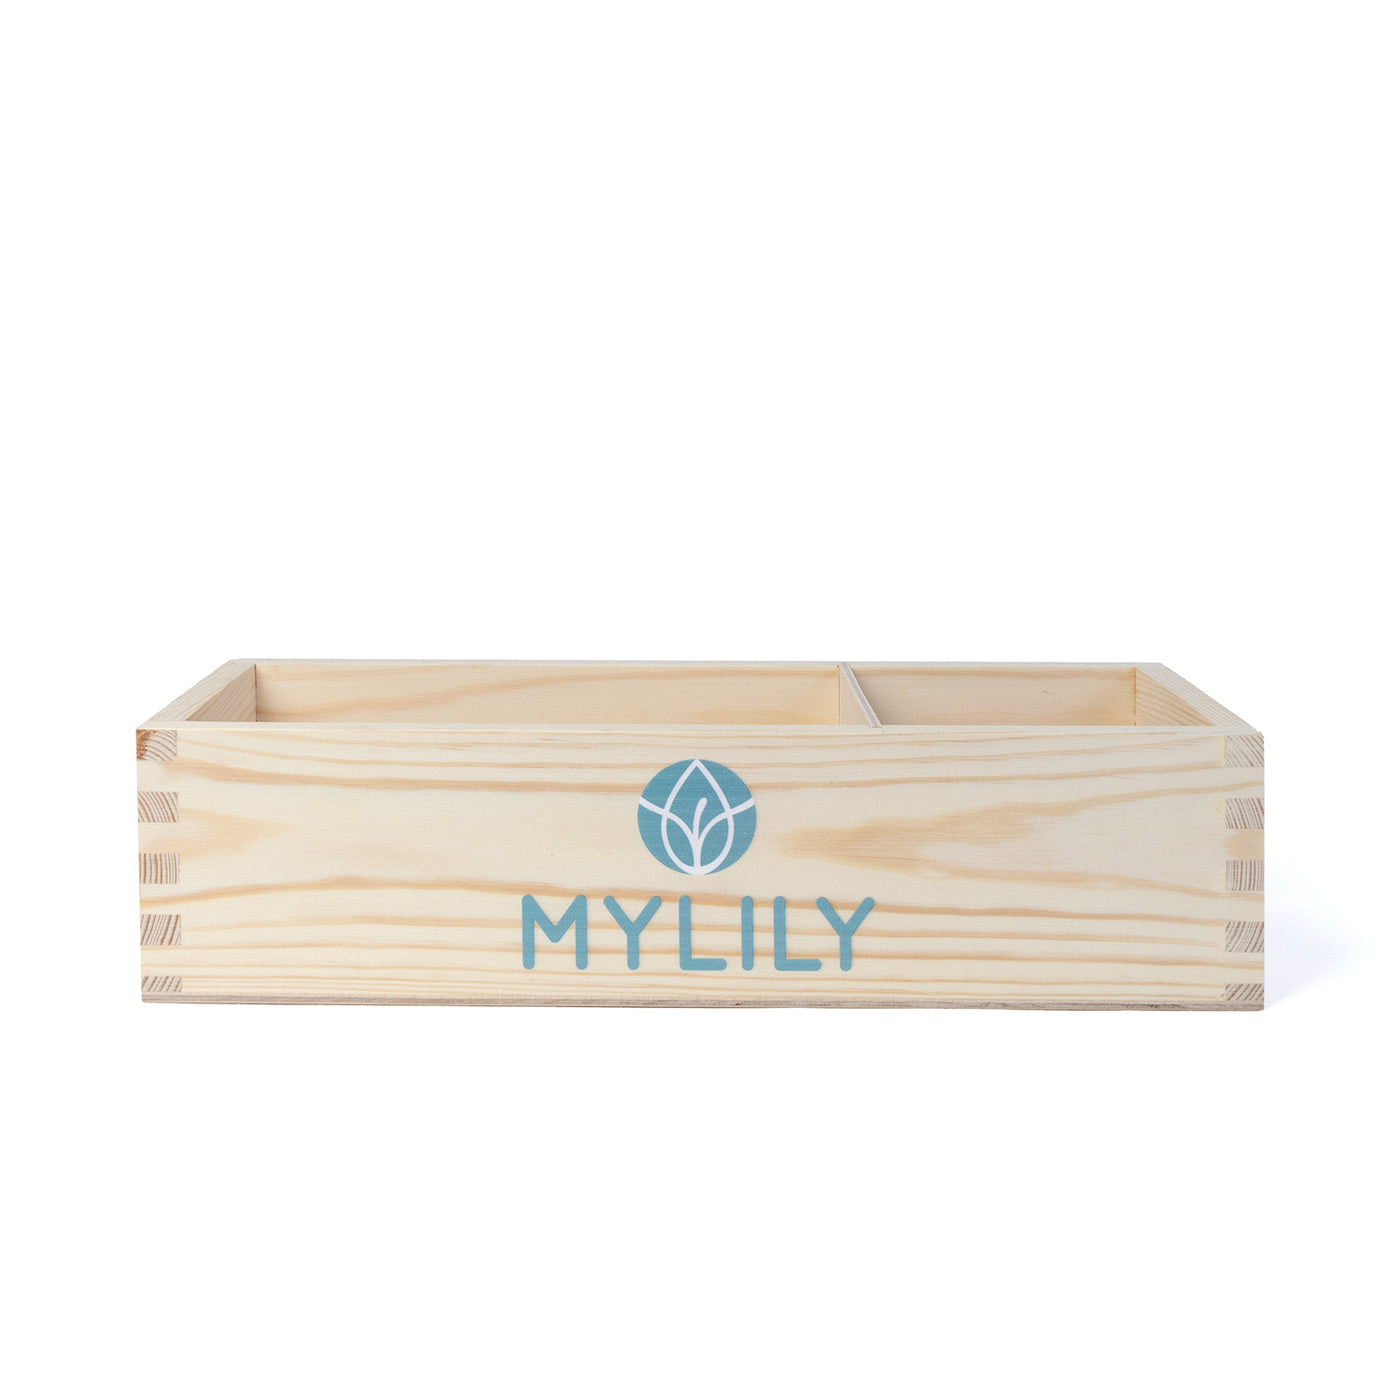 Tampon und Binden Box aus Holz von MYLILY für die Bereitstellung von kostenlosen Tampons und Binden  auf Toiletten